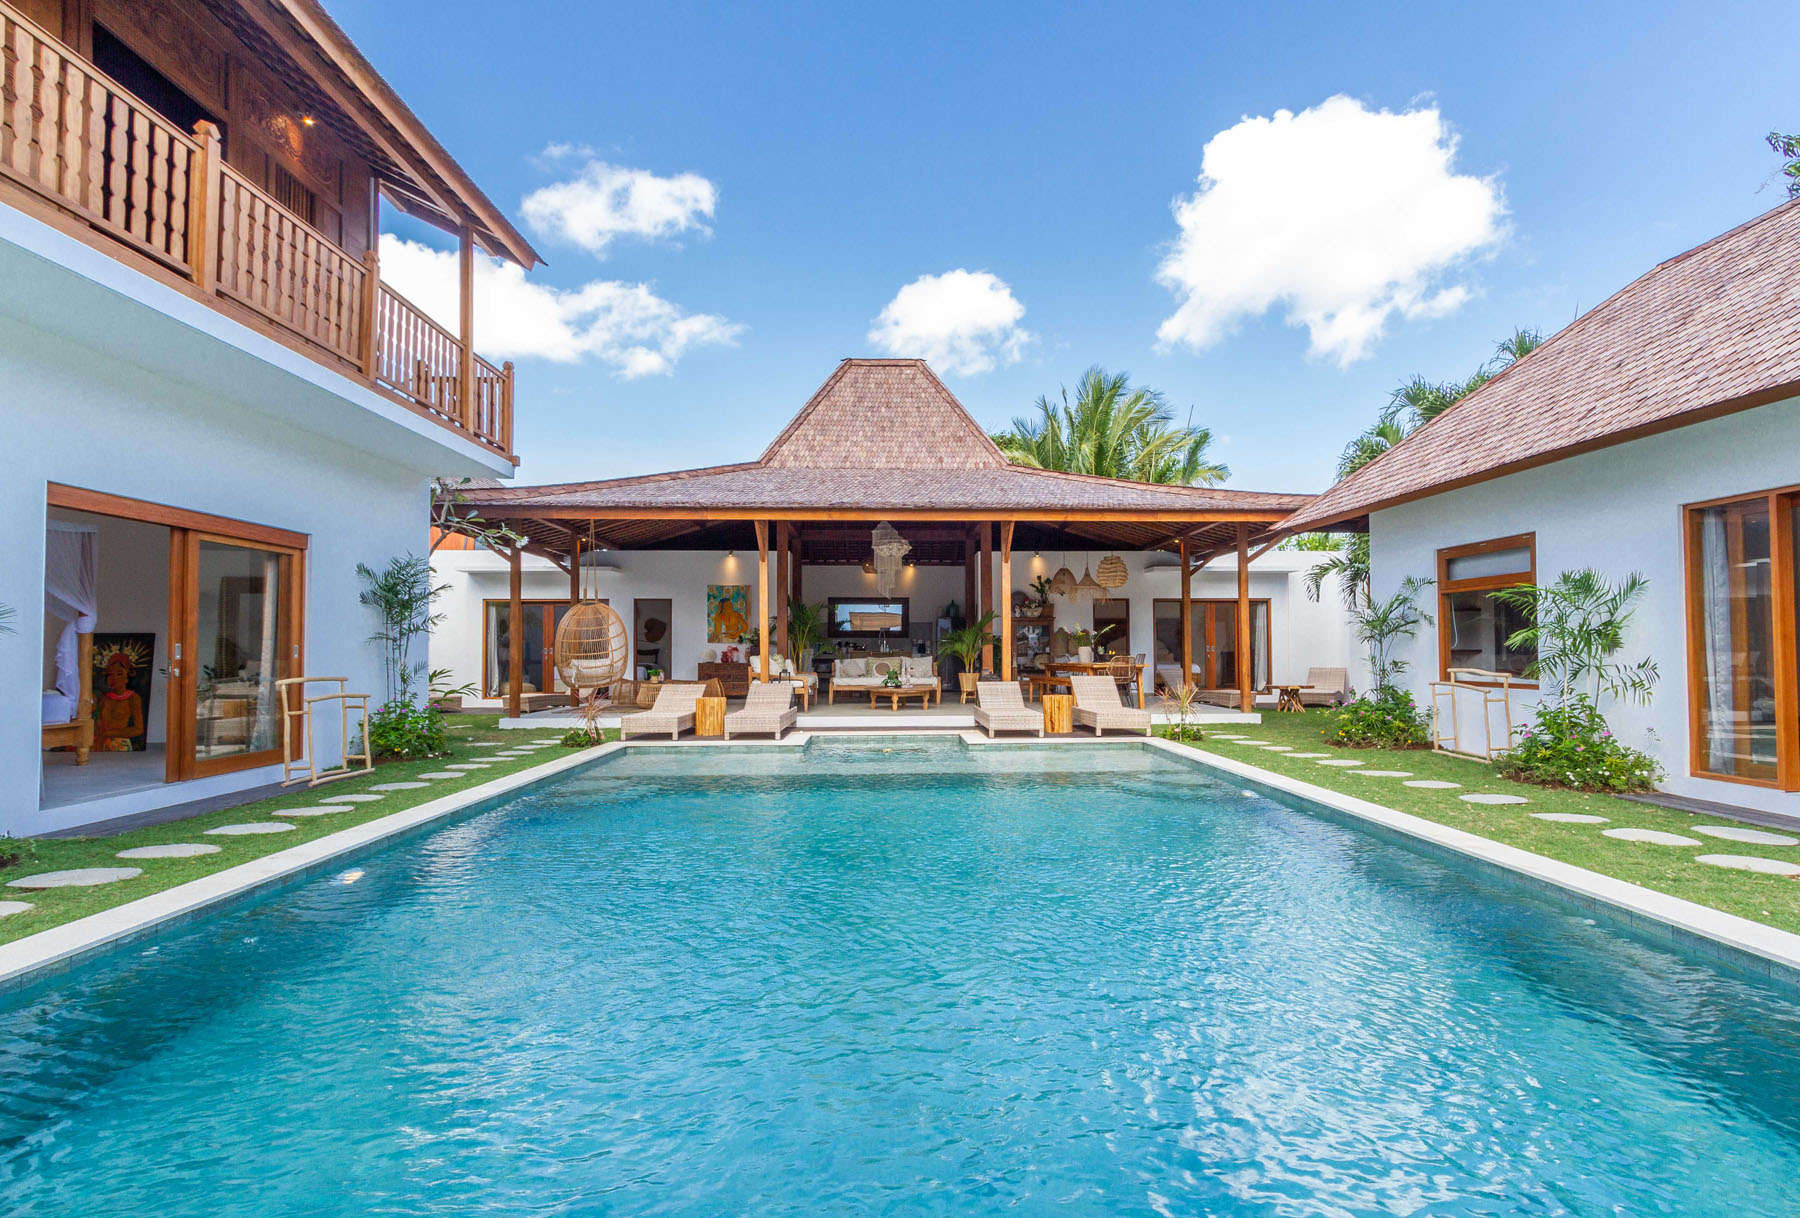 Pool View Villa Nabi Seminyak Bali